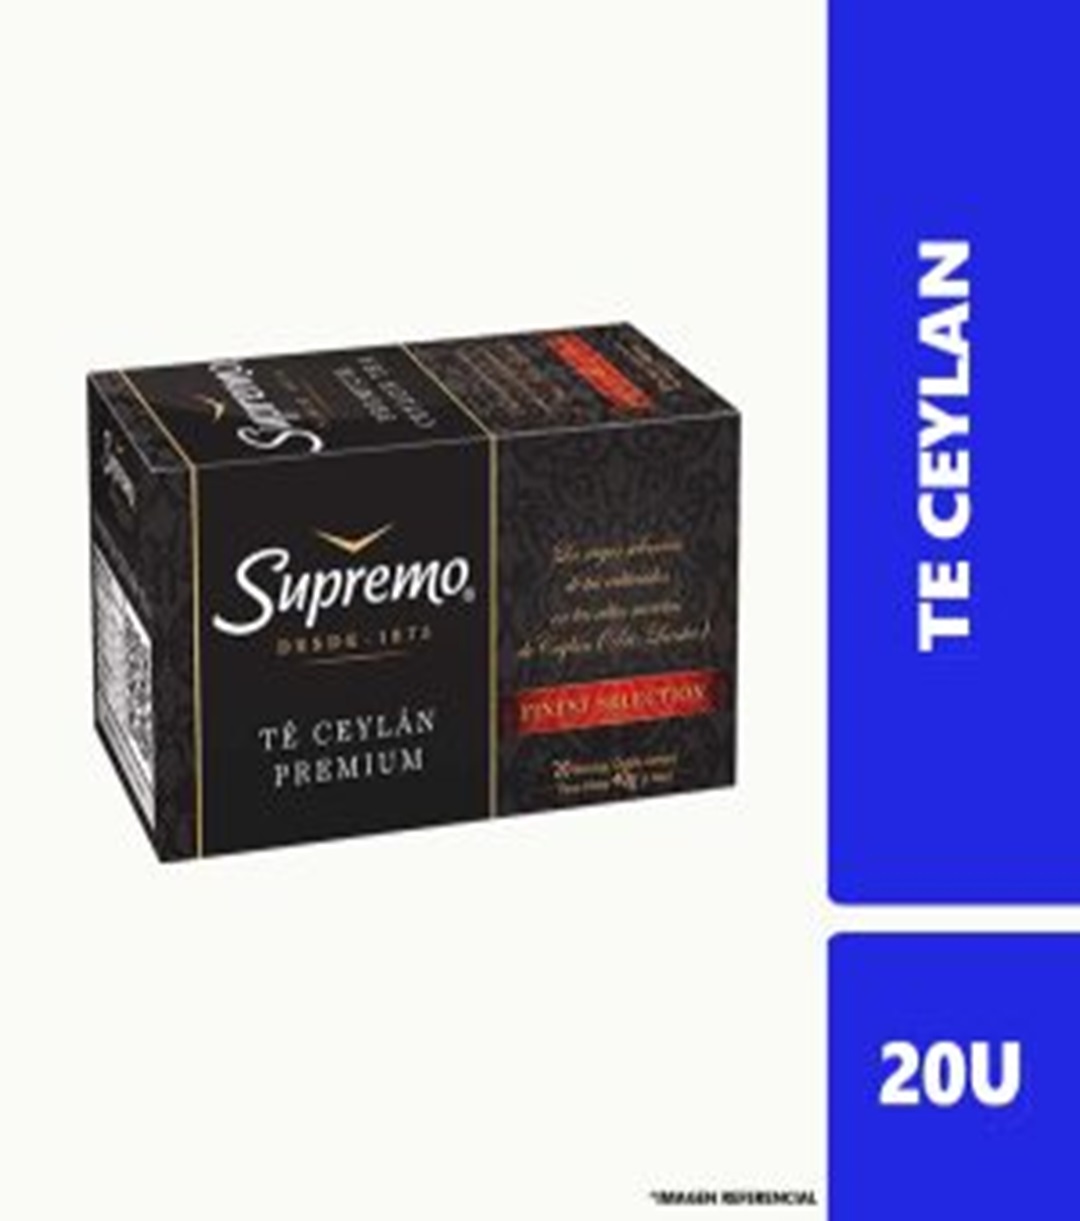 Te Ceylan Premium Supremo Caj 20u